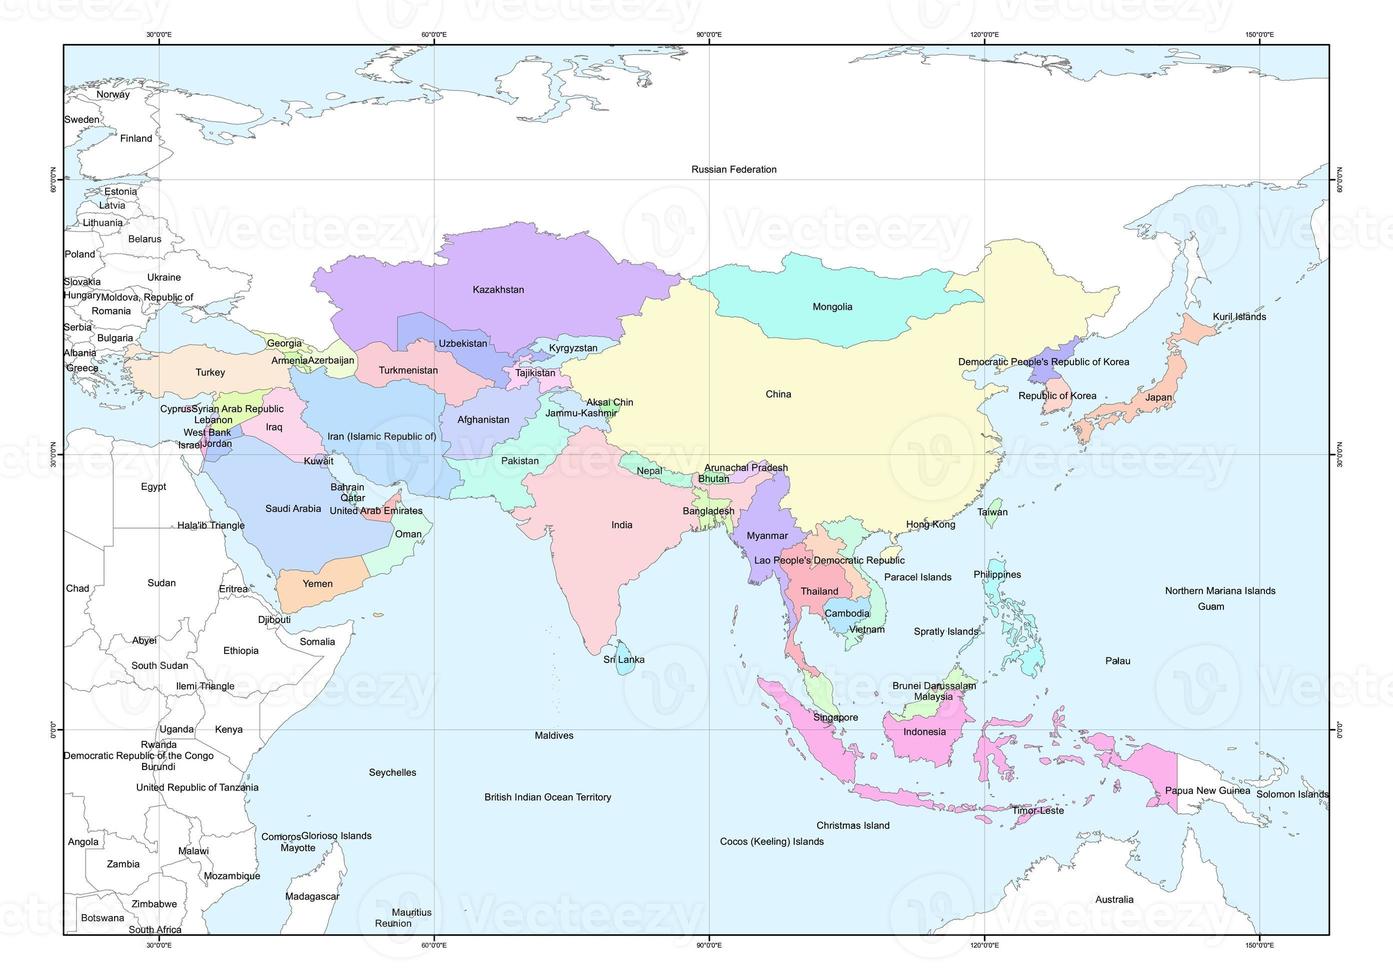 Karte der staatlichen Verwaltung in Teilen des asiatischen Kontinents foto